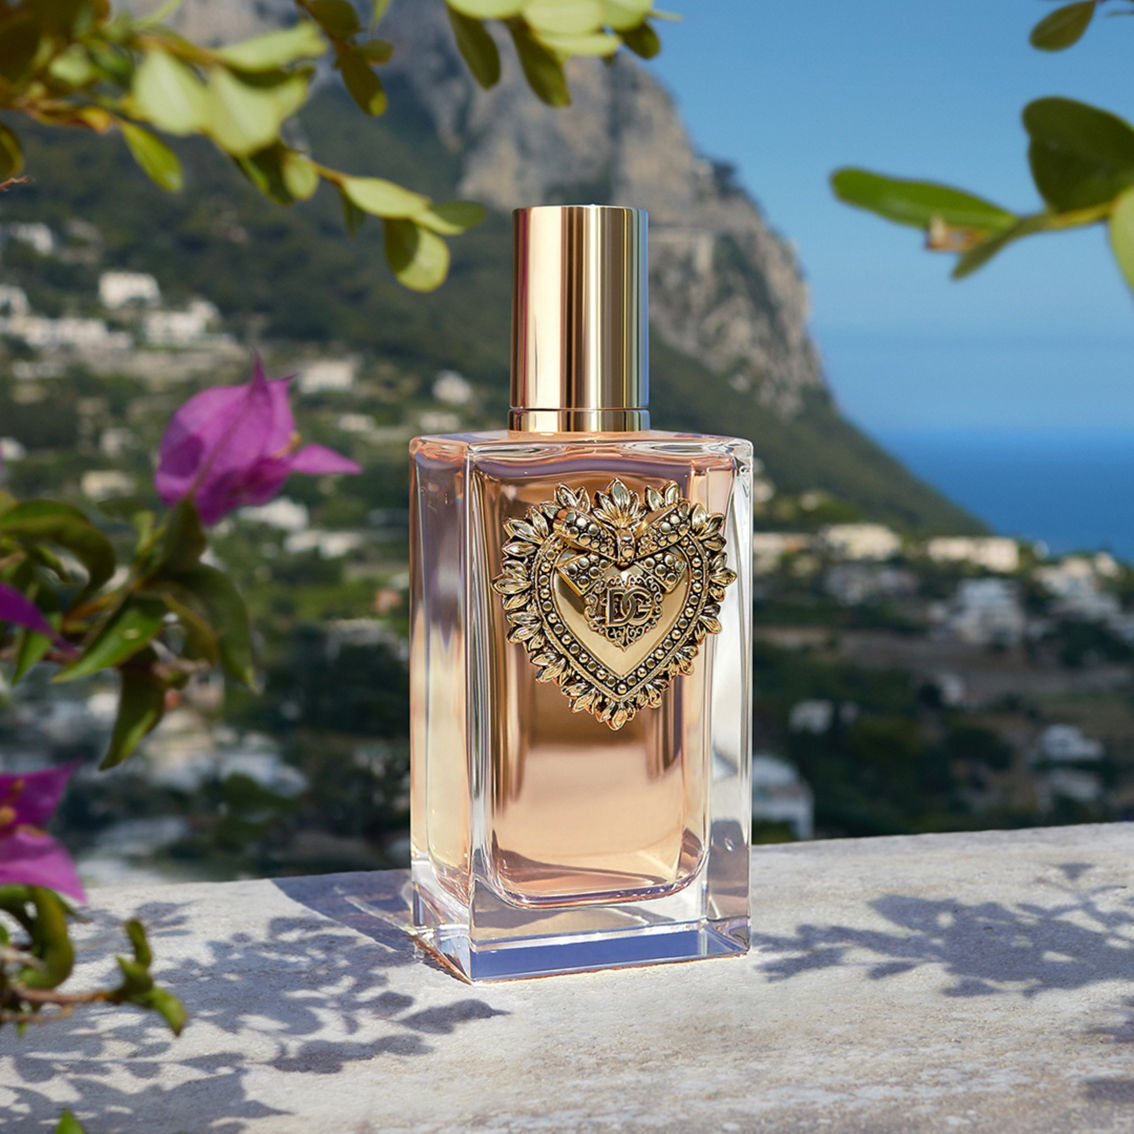 Dolce & Gabbana Devotion Eau de Parfum - Image 4 of 7